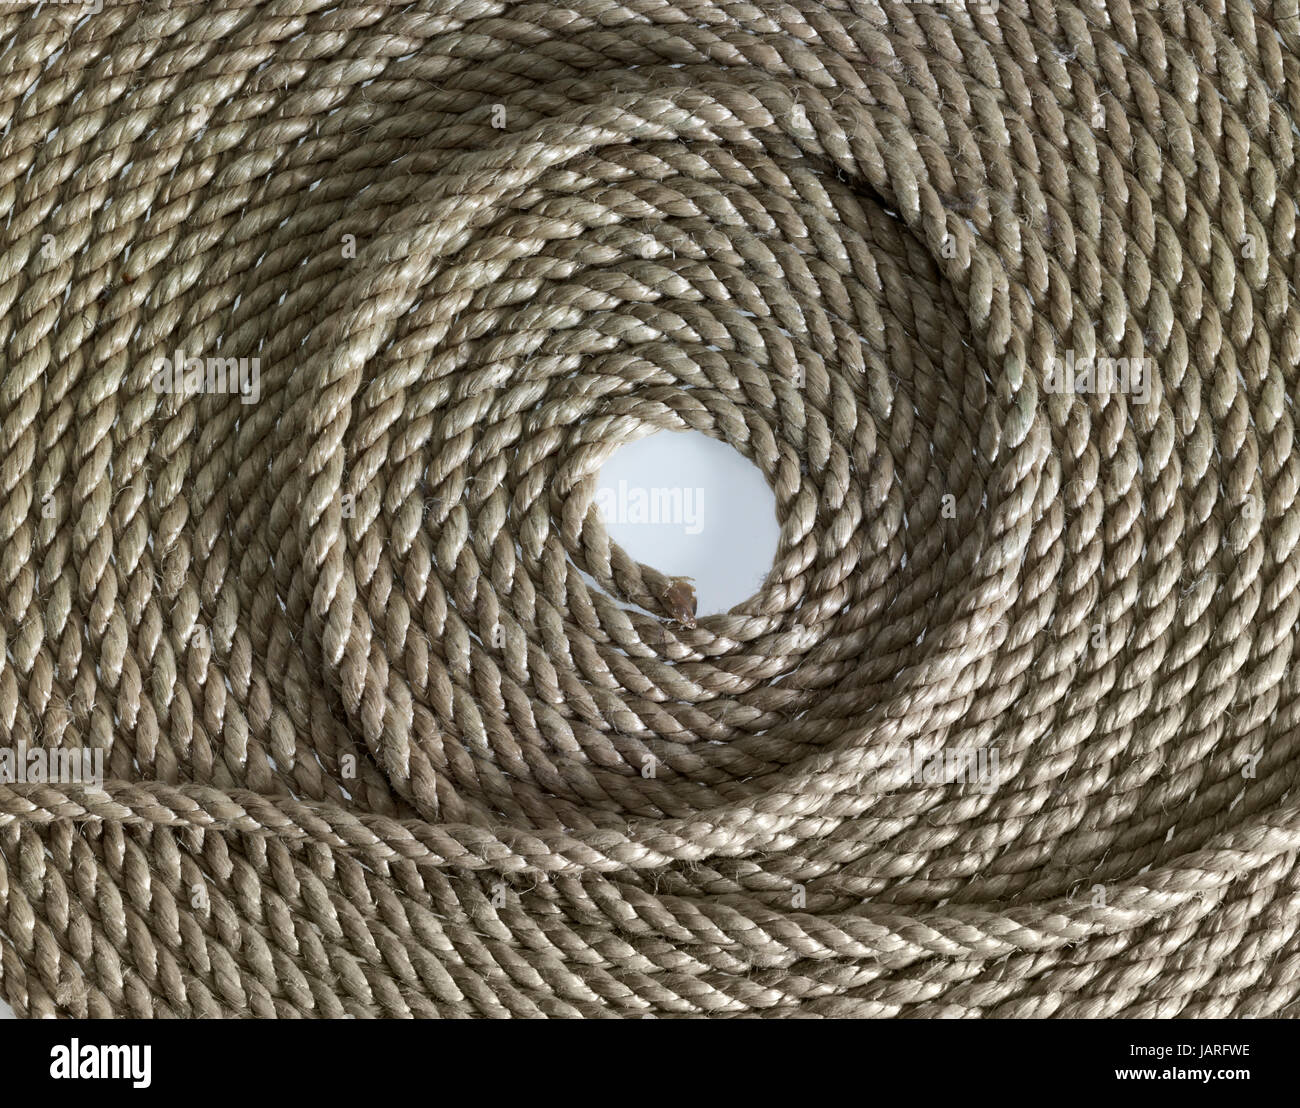 Telaio completo dettaglio di una corda arrotolata Foto Stock